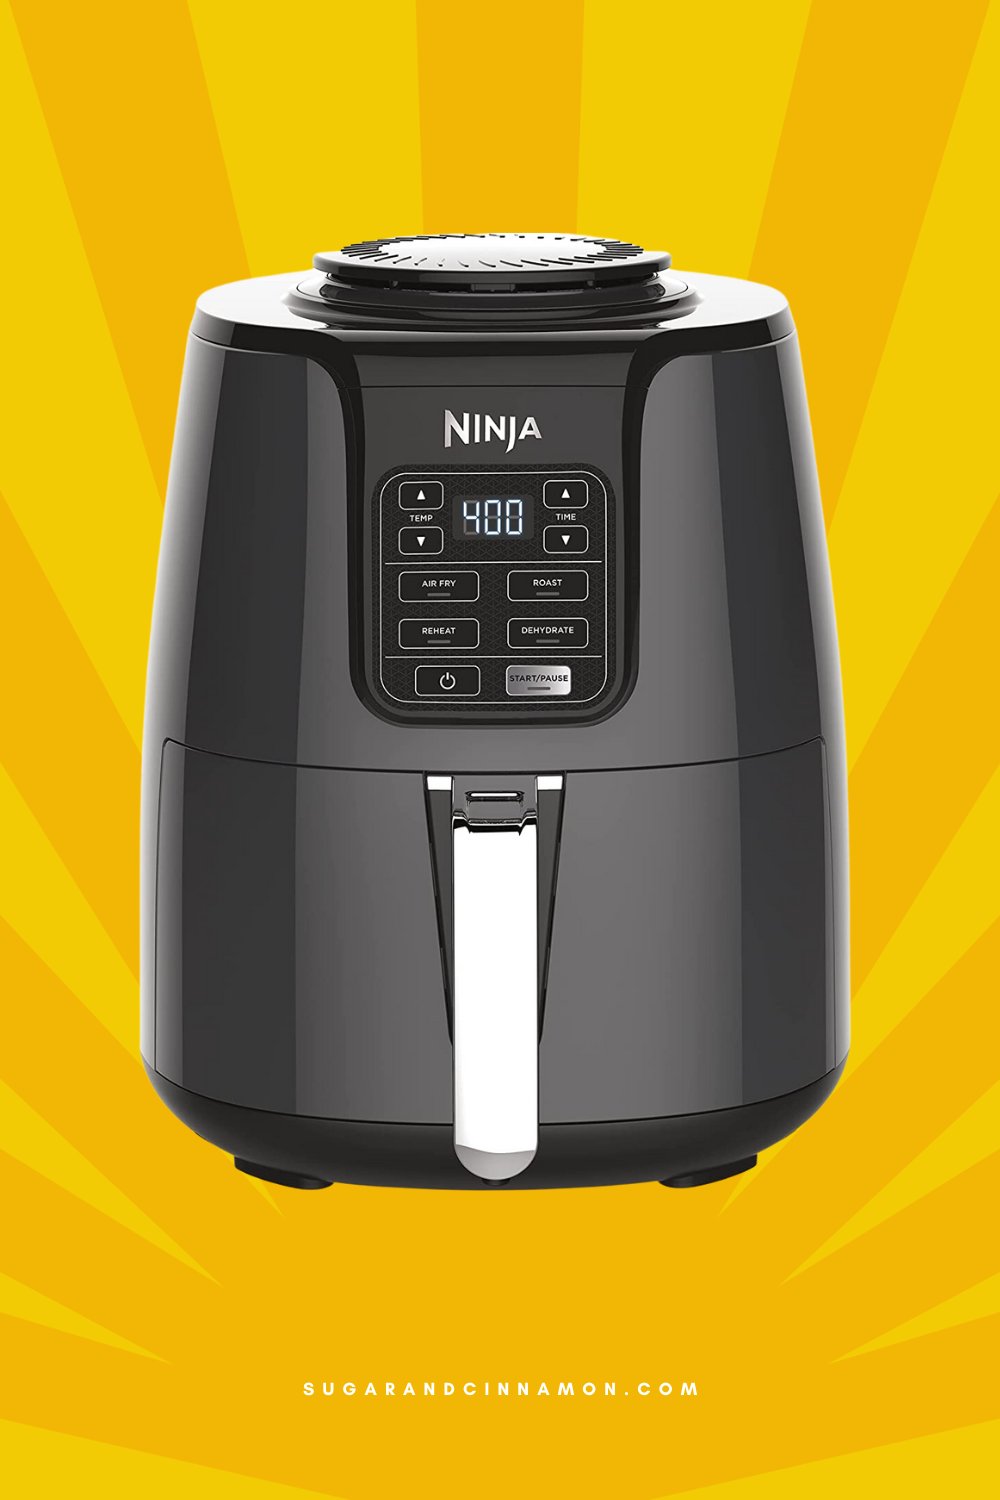 Ninja AF101 Air Fryer that Crisps